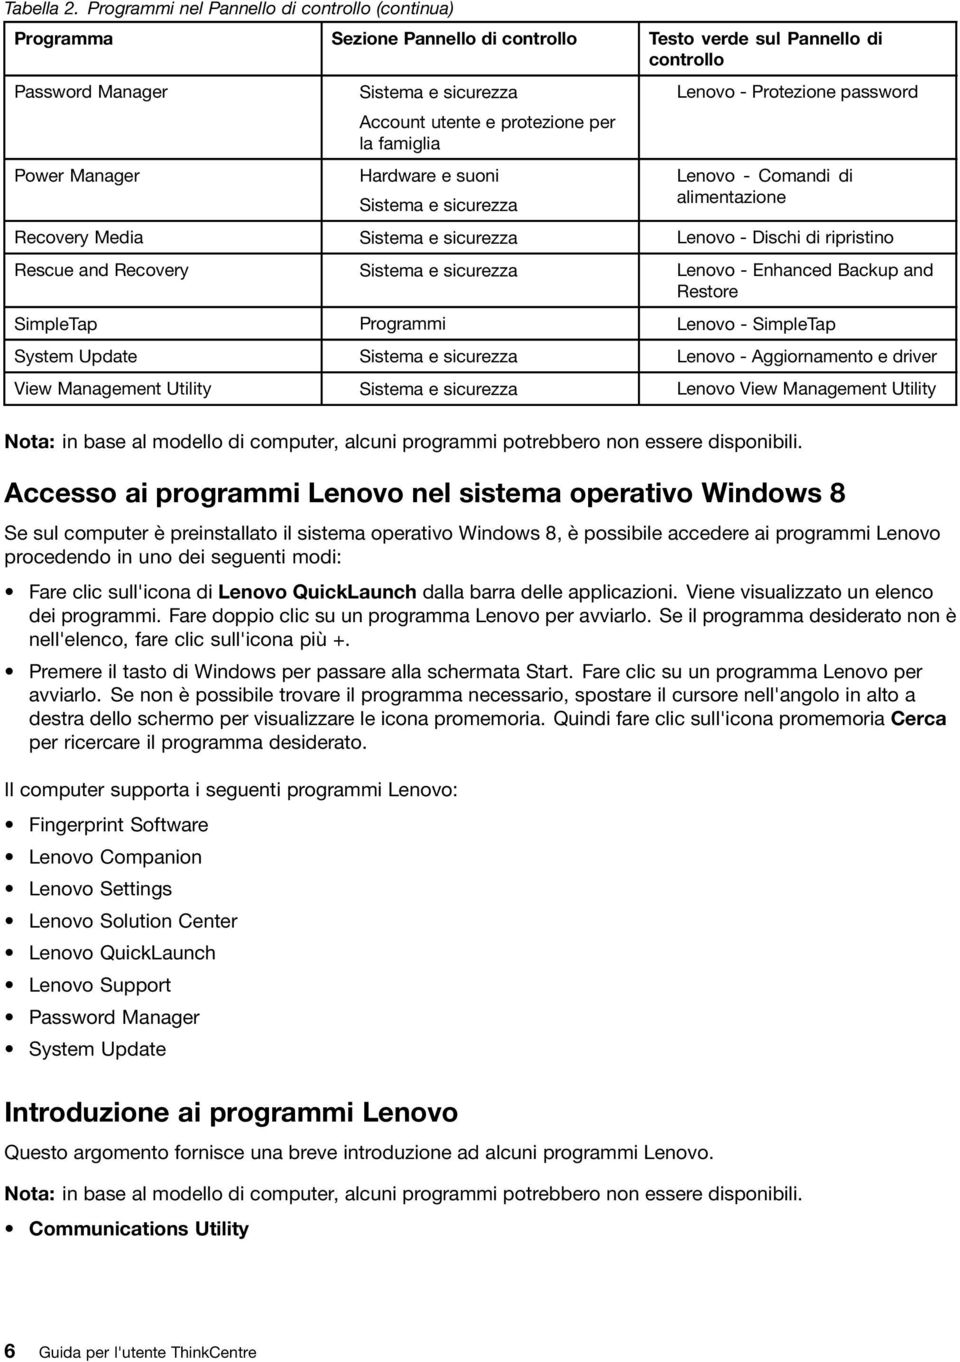 protezione per la famiglia Hardware e suoni Sistema e sicurezza Lenovo - Protezione password Lenovo - Comandi di alimentazione Recovery Media Sistema e sicurezza Lenovo - Dischi di ripristino Rescue